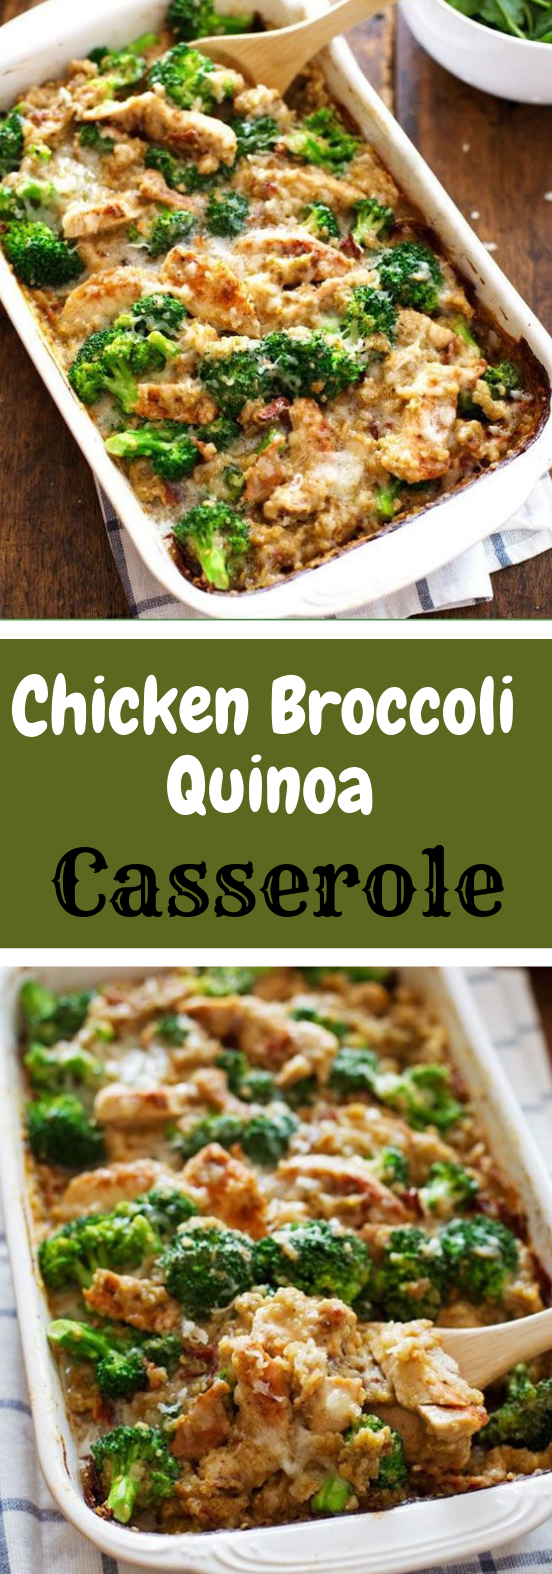 creamy chicken quinoa and broccoli casserole #dinner #recipecooking